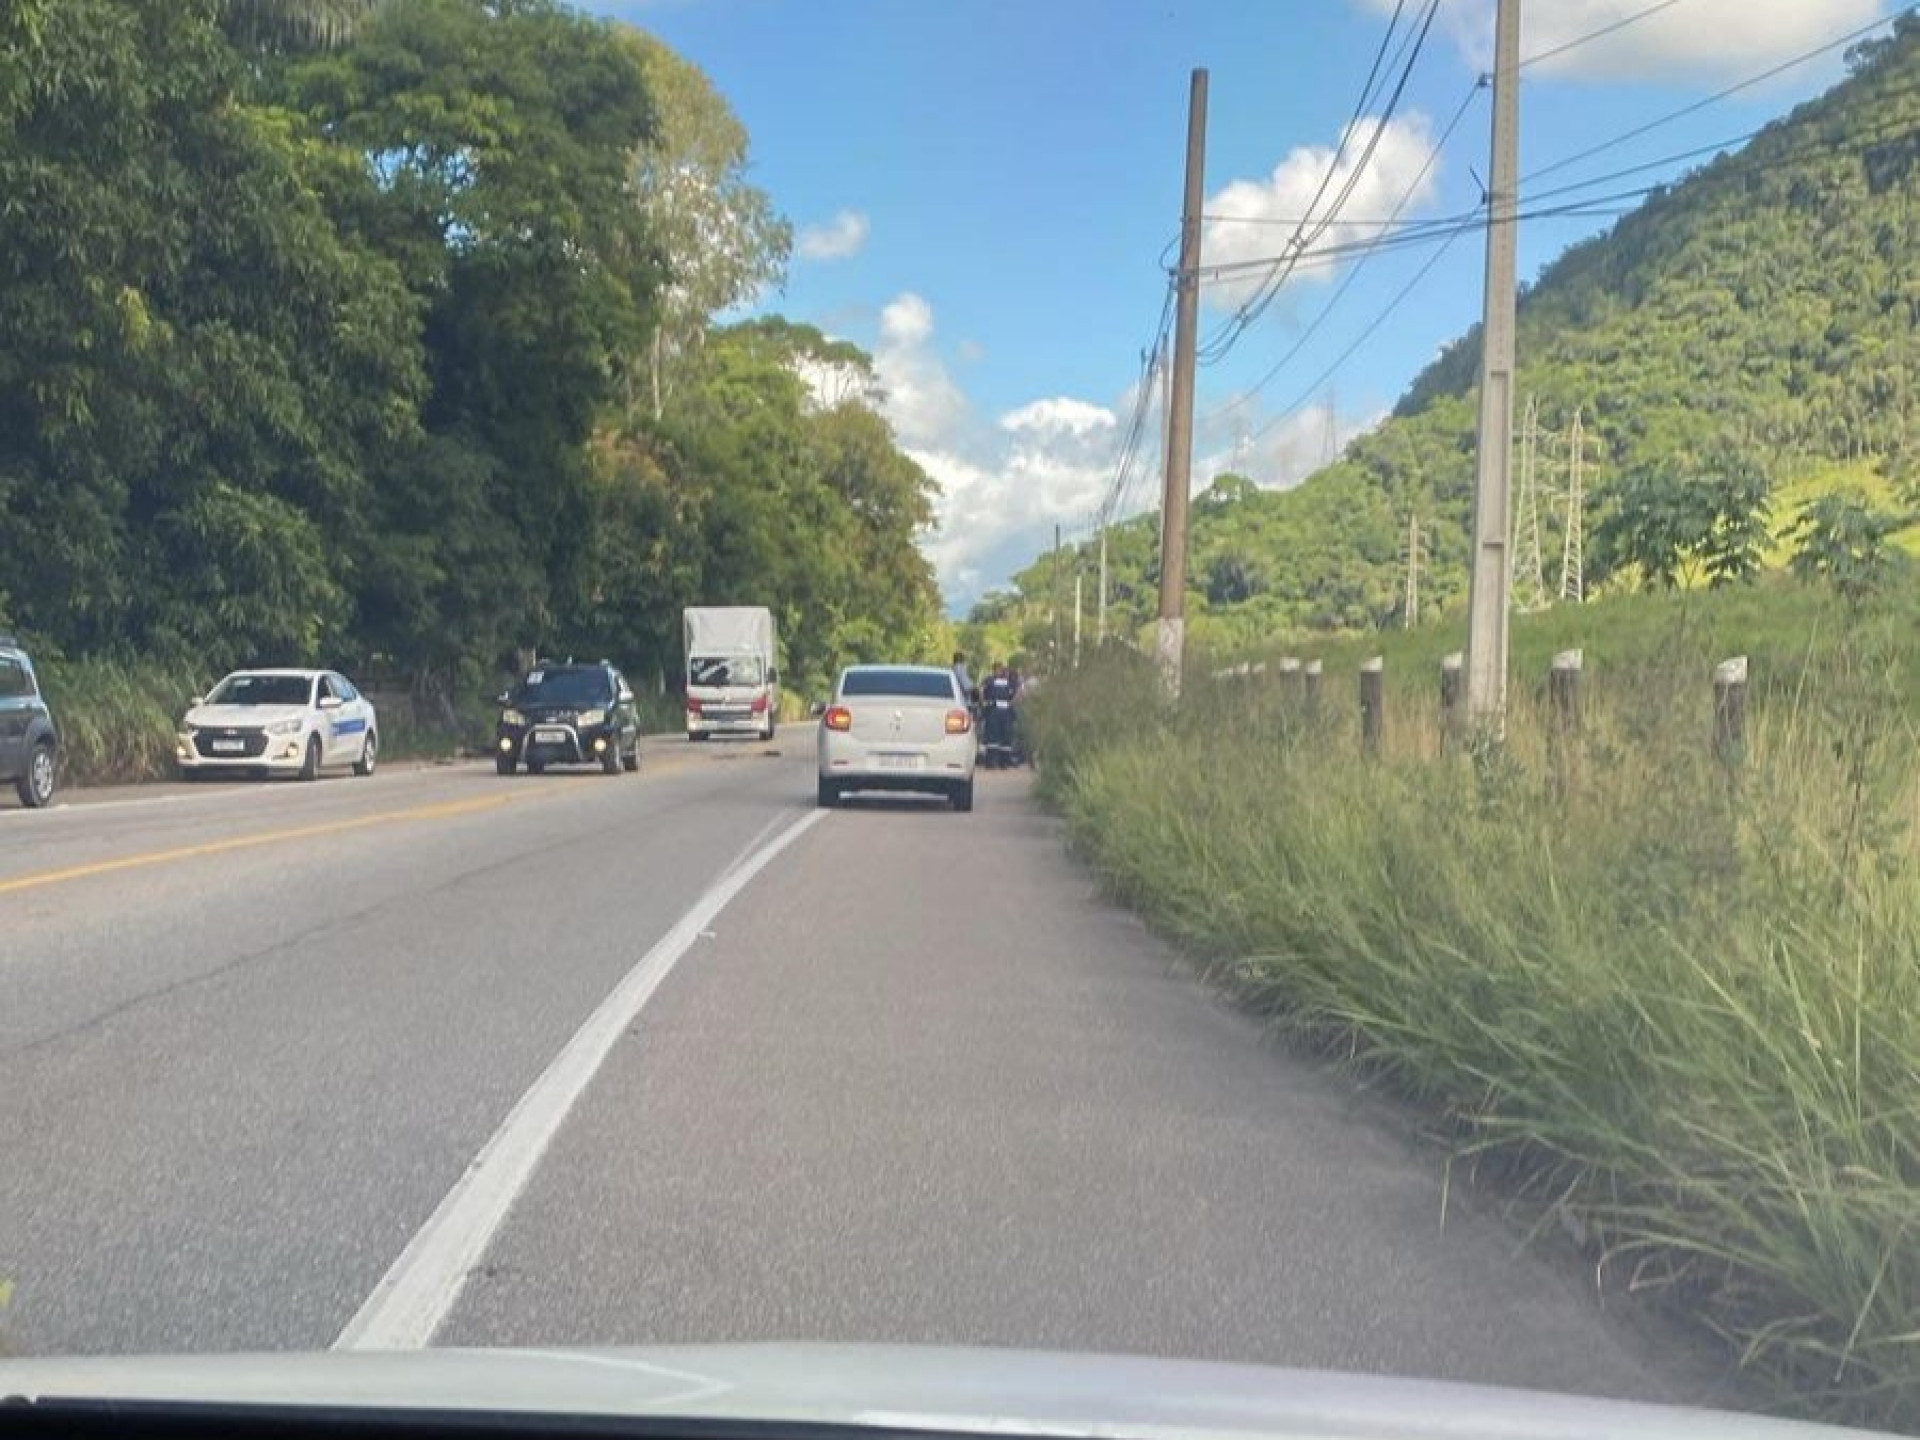 Acidente ocorreu na manhã desta terça-feira, na RJ-168, próximo ao trevo da entrada de Macaé - Foto: Divulgação